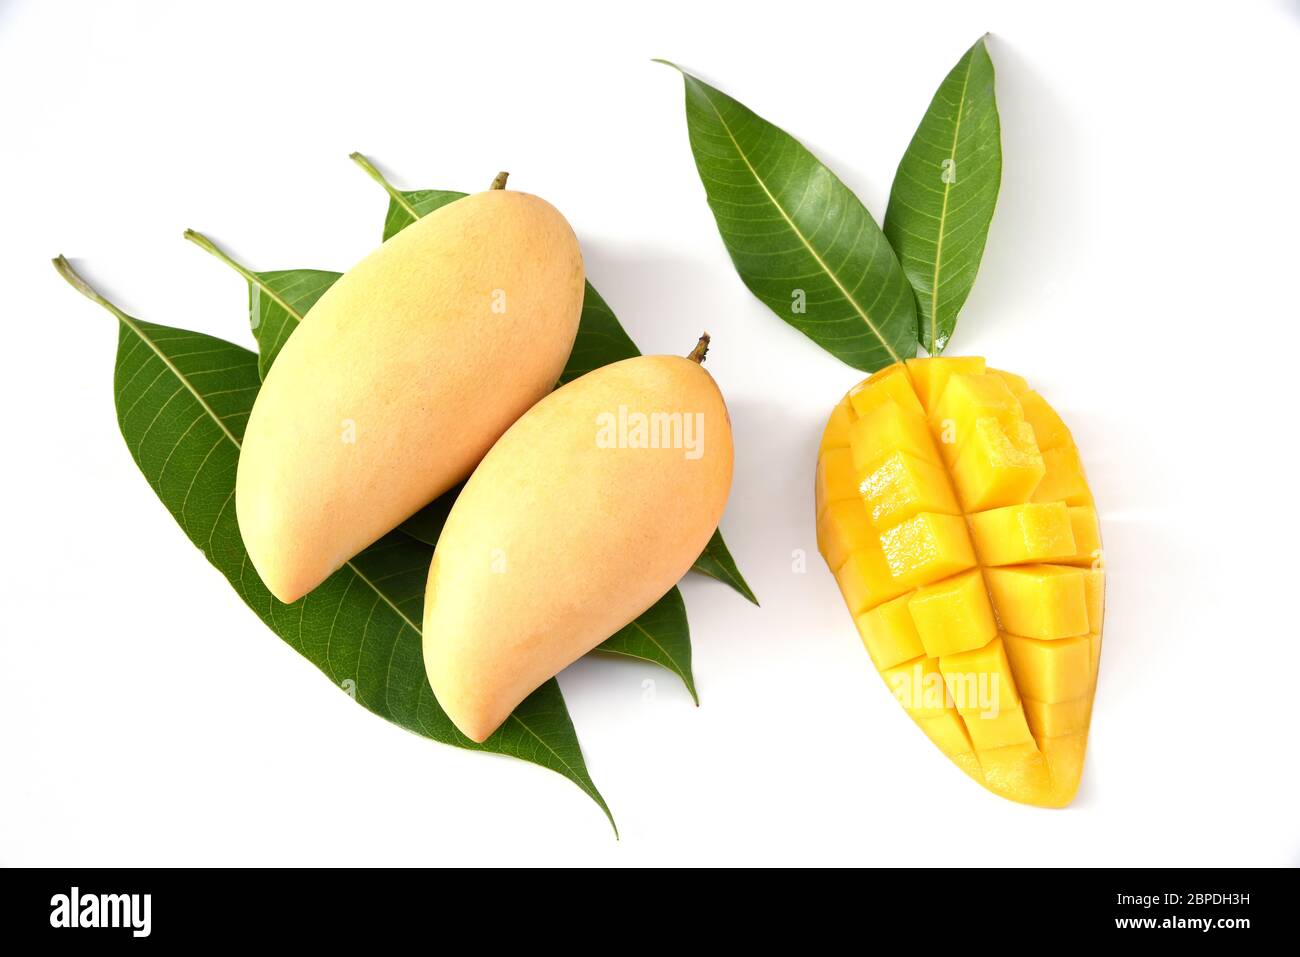 Frutta di mango con cubetti di mango e fette. Isolato su sfondo bianco. Perfetta frutta di mango matura. Messa a fuoco selezionata Foto Stock